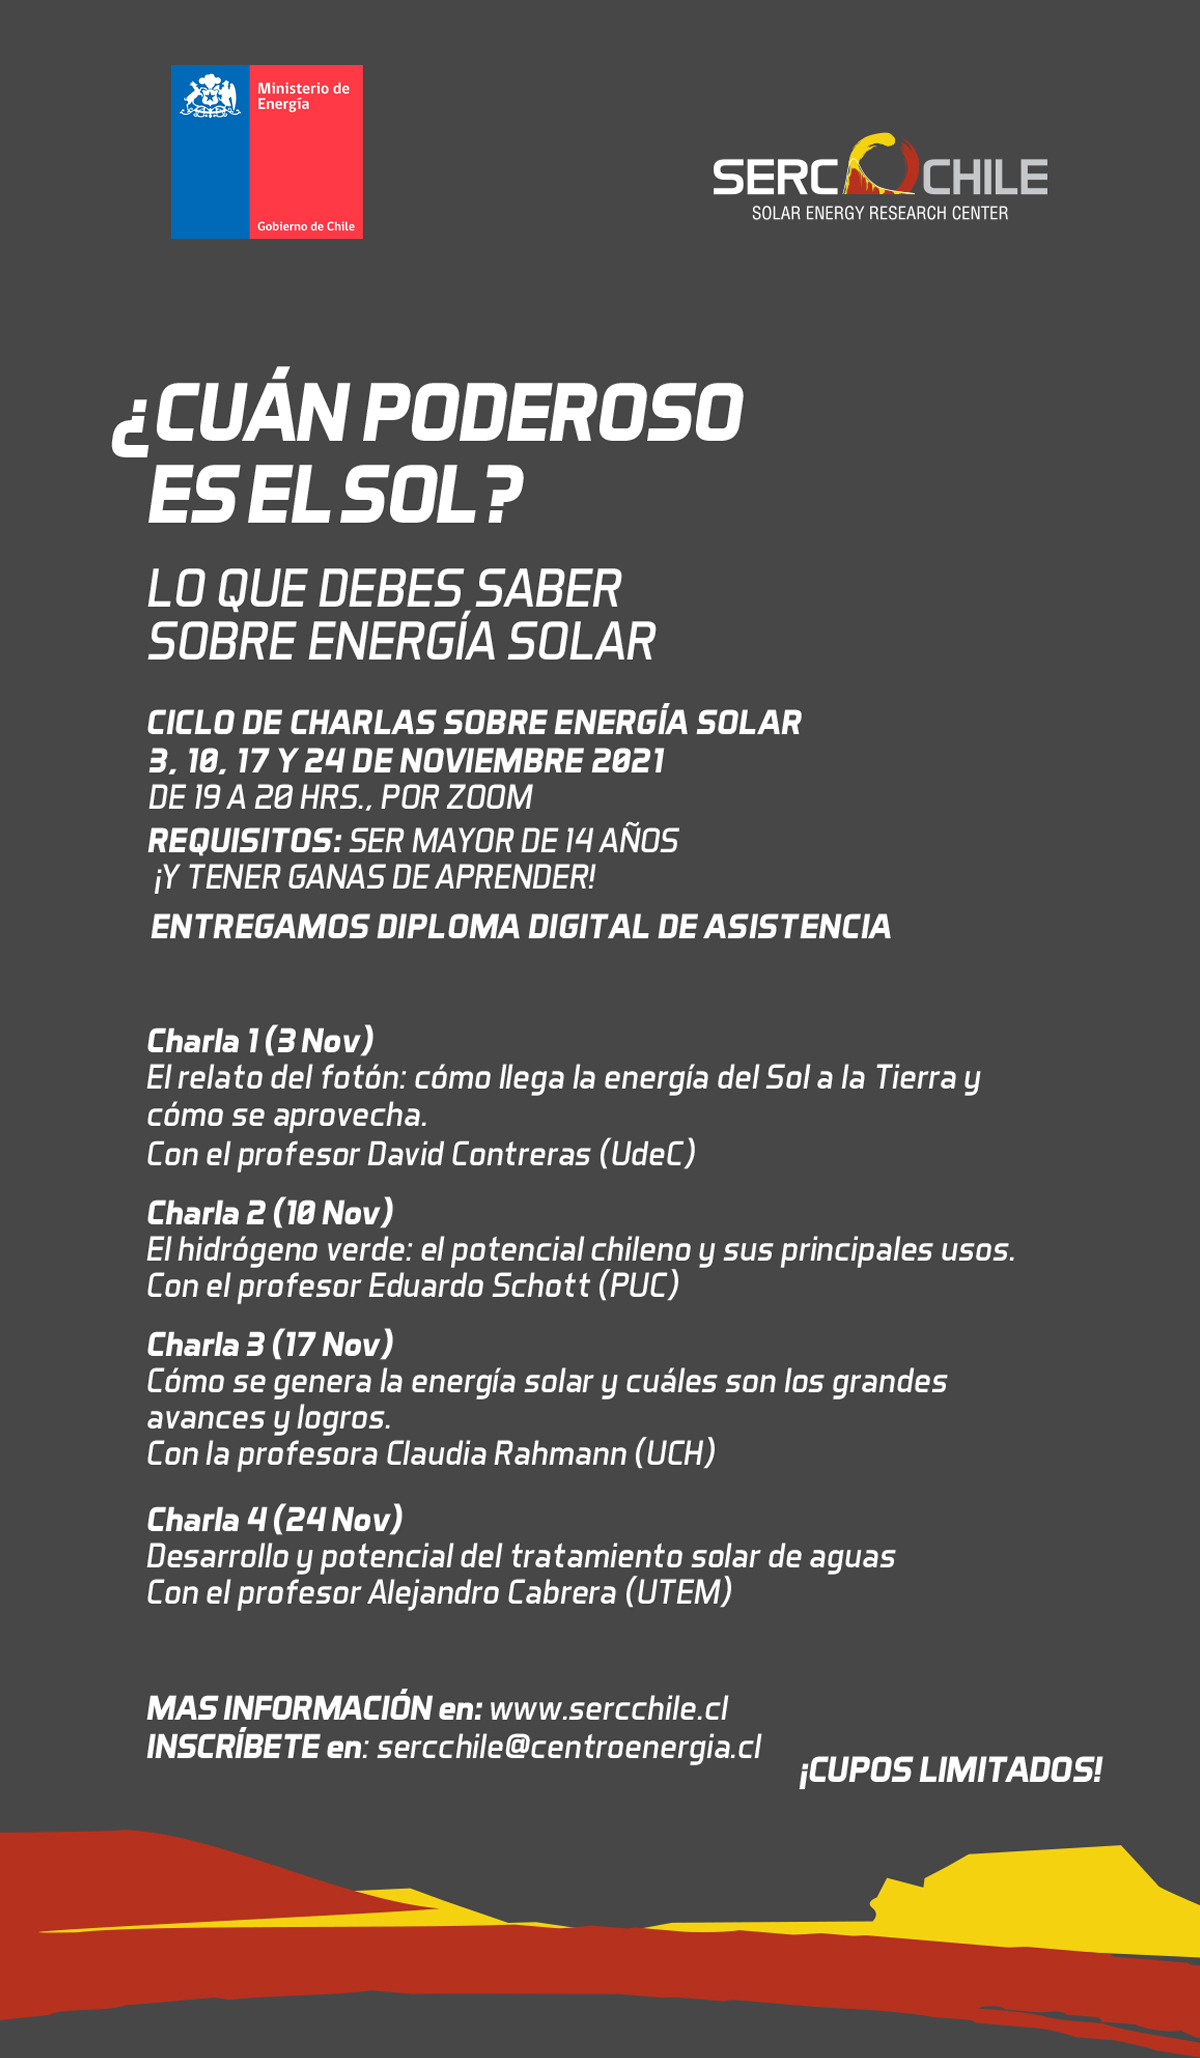 (Español) SERC Chile Organiza Ciclo Gratuito De Charlas Sobre Energía Solar